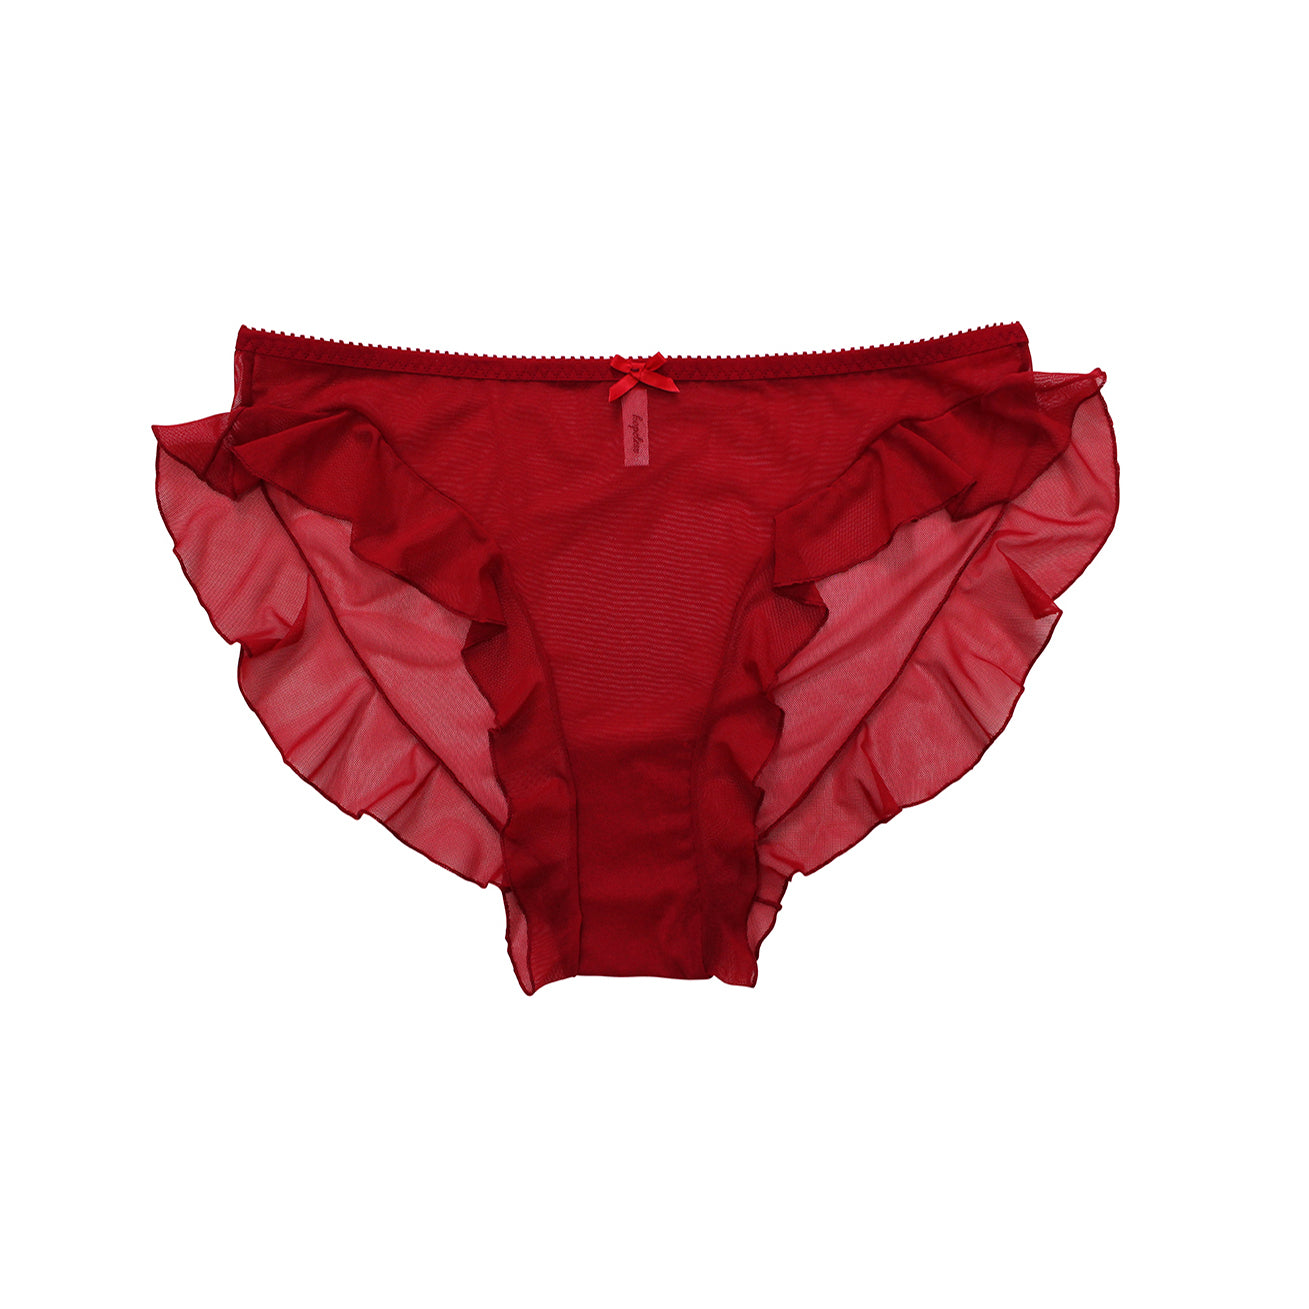 Red Underwear  High Waisted Lingerie Made in Australia by Hopeless –  Hopeless Lingerie